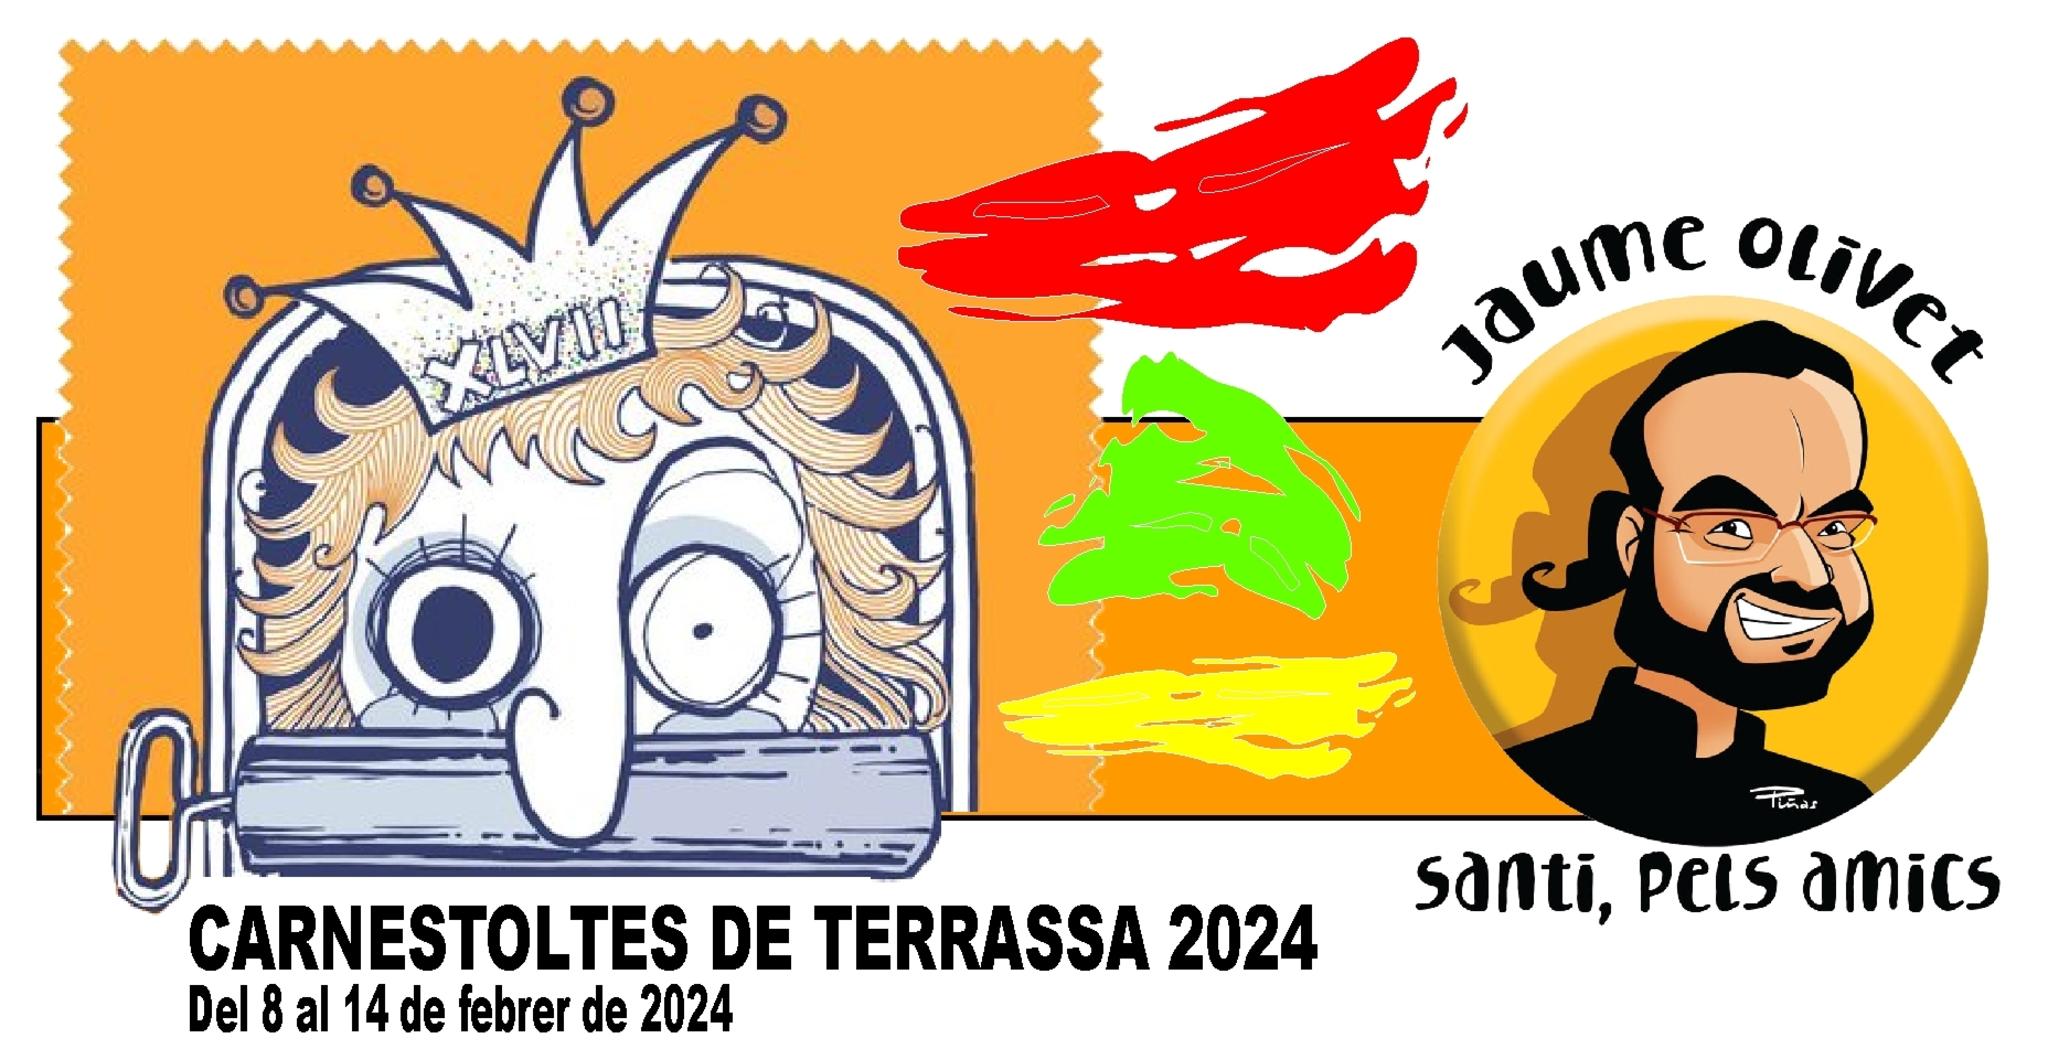  Jaume Olivet 2024